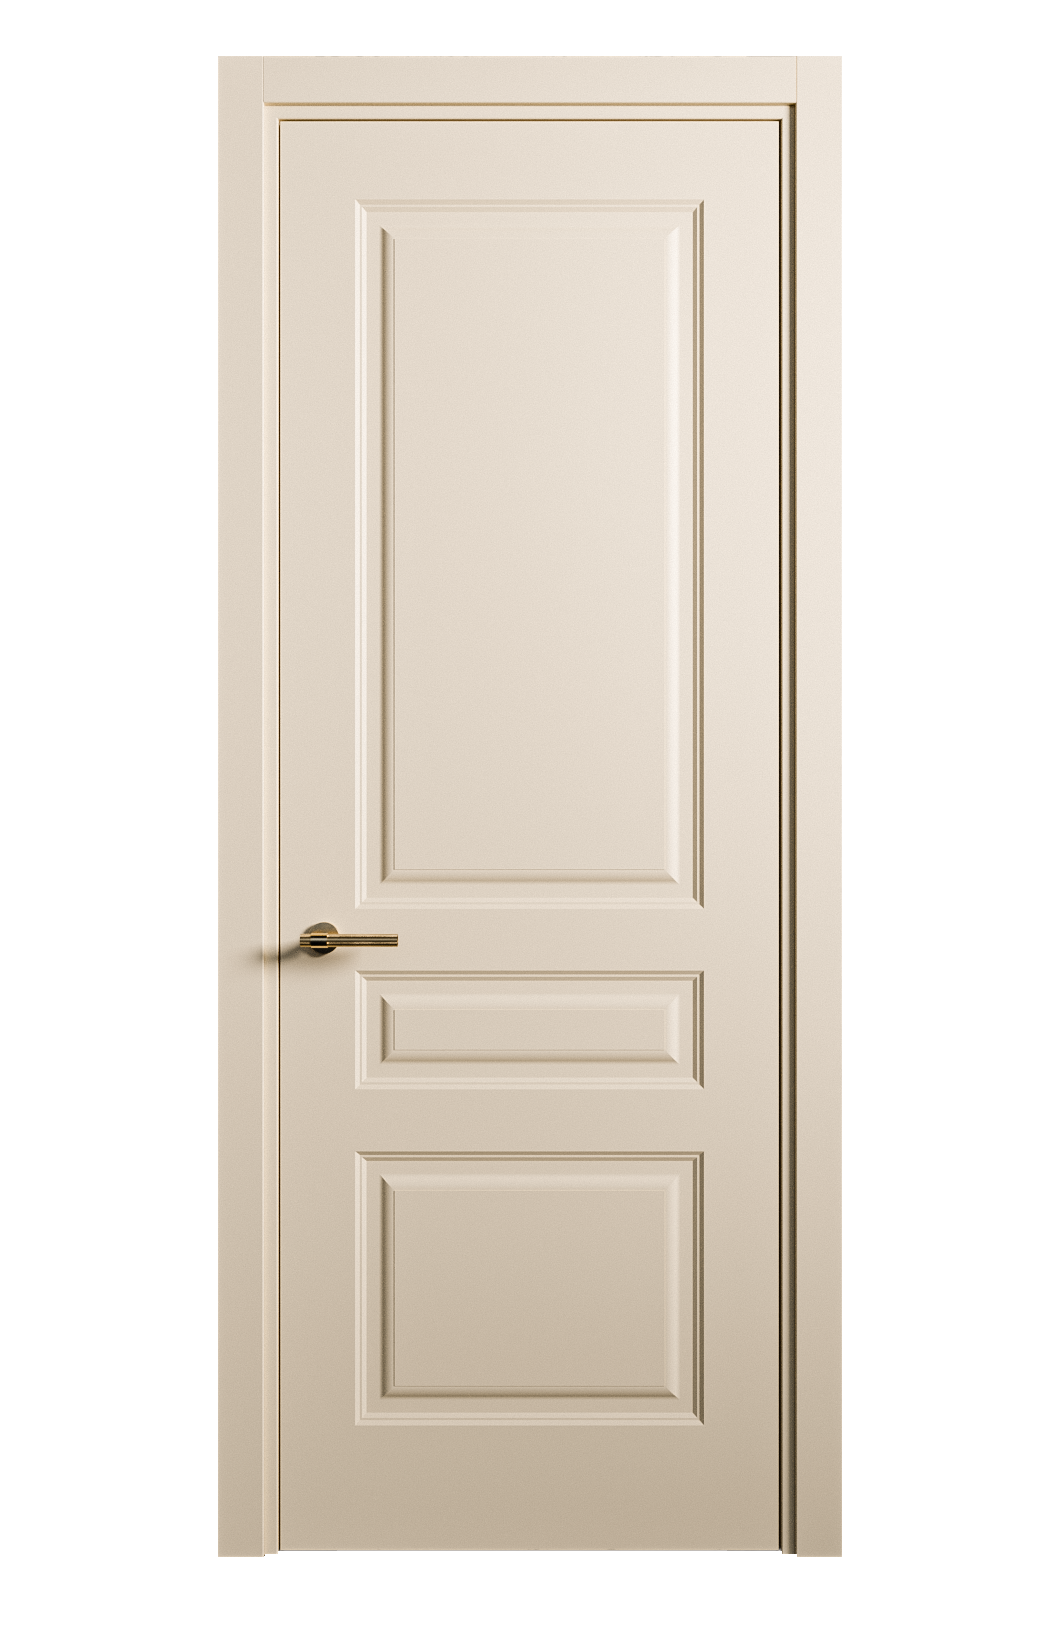 Межкомнатная дверь Вита-2 глухая эмаль ral 1015 26315